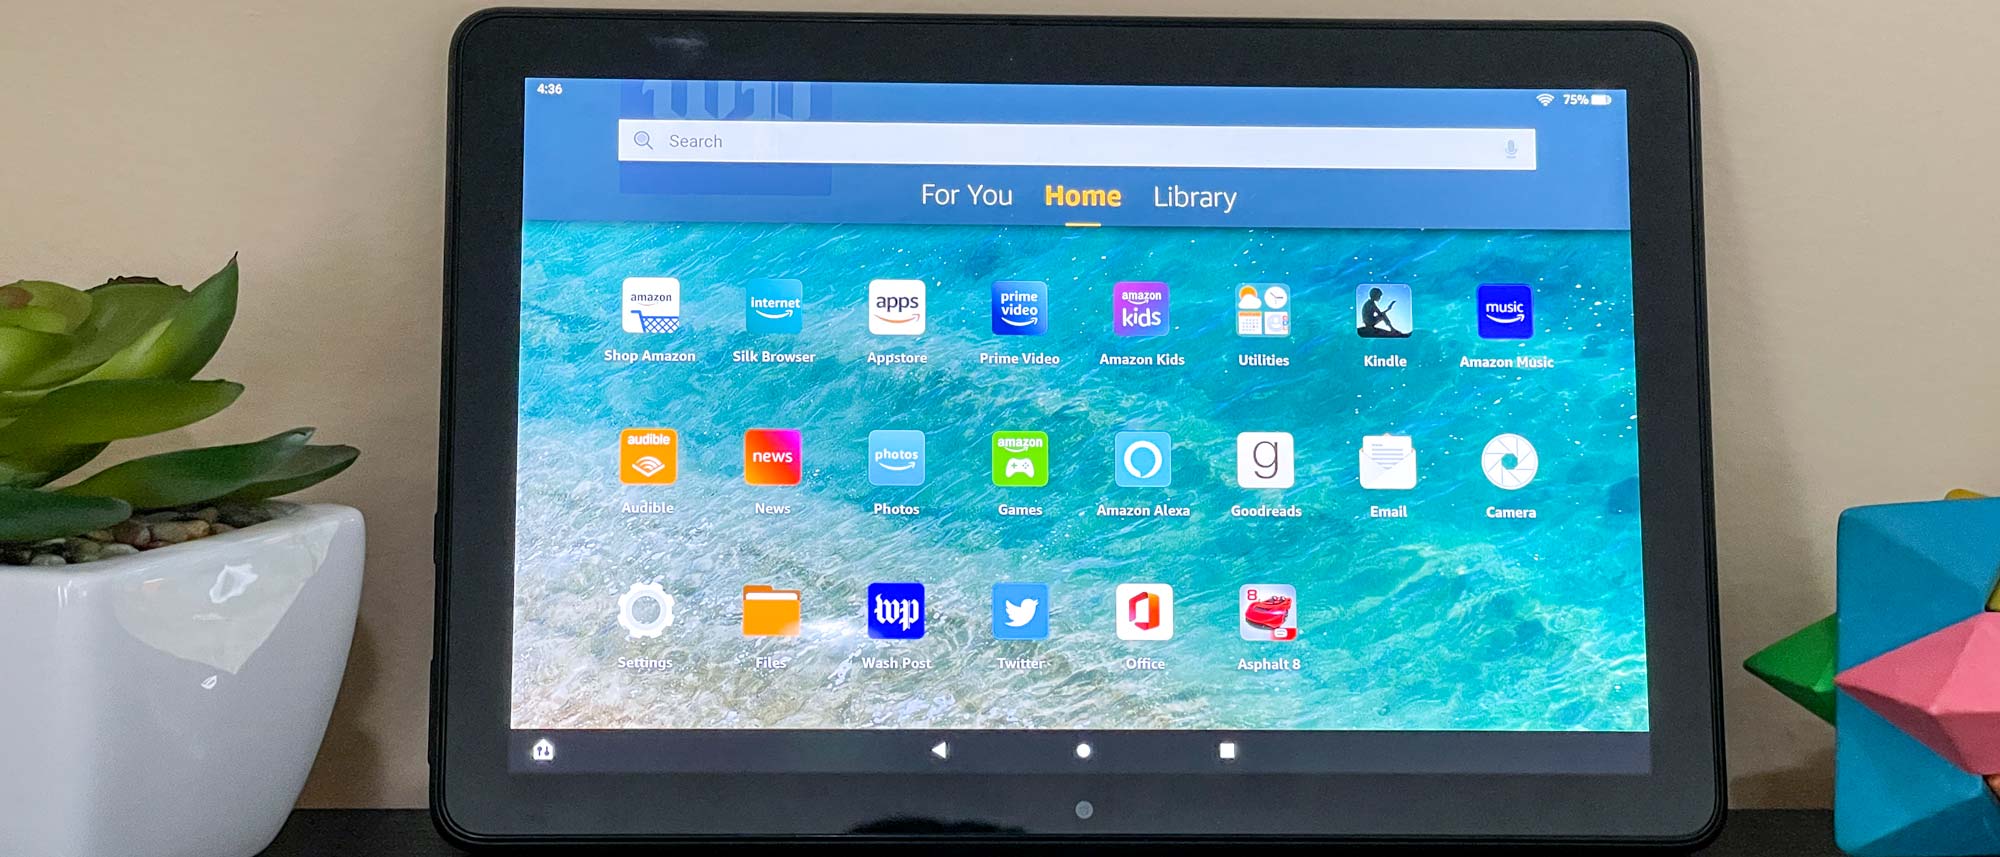 Amazon Fire HD 10 Kids (2021) là một chiếc máy tính bảng tuyệt vời cho các bé yêu. Được thiết kế độc đáo với tính năng bảo vệ mắt và kiểm soát nội dung an toàn, sản phẩm này sẽ mang lại trải nghiệm giải trí thú vị và học tập bổ ích cho các bé.